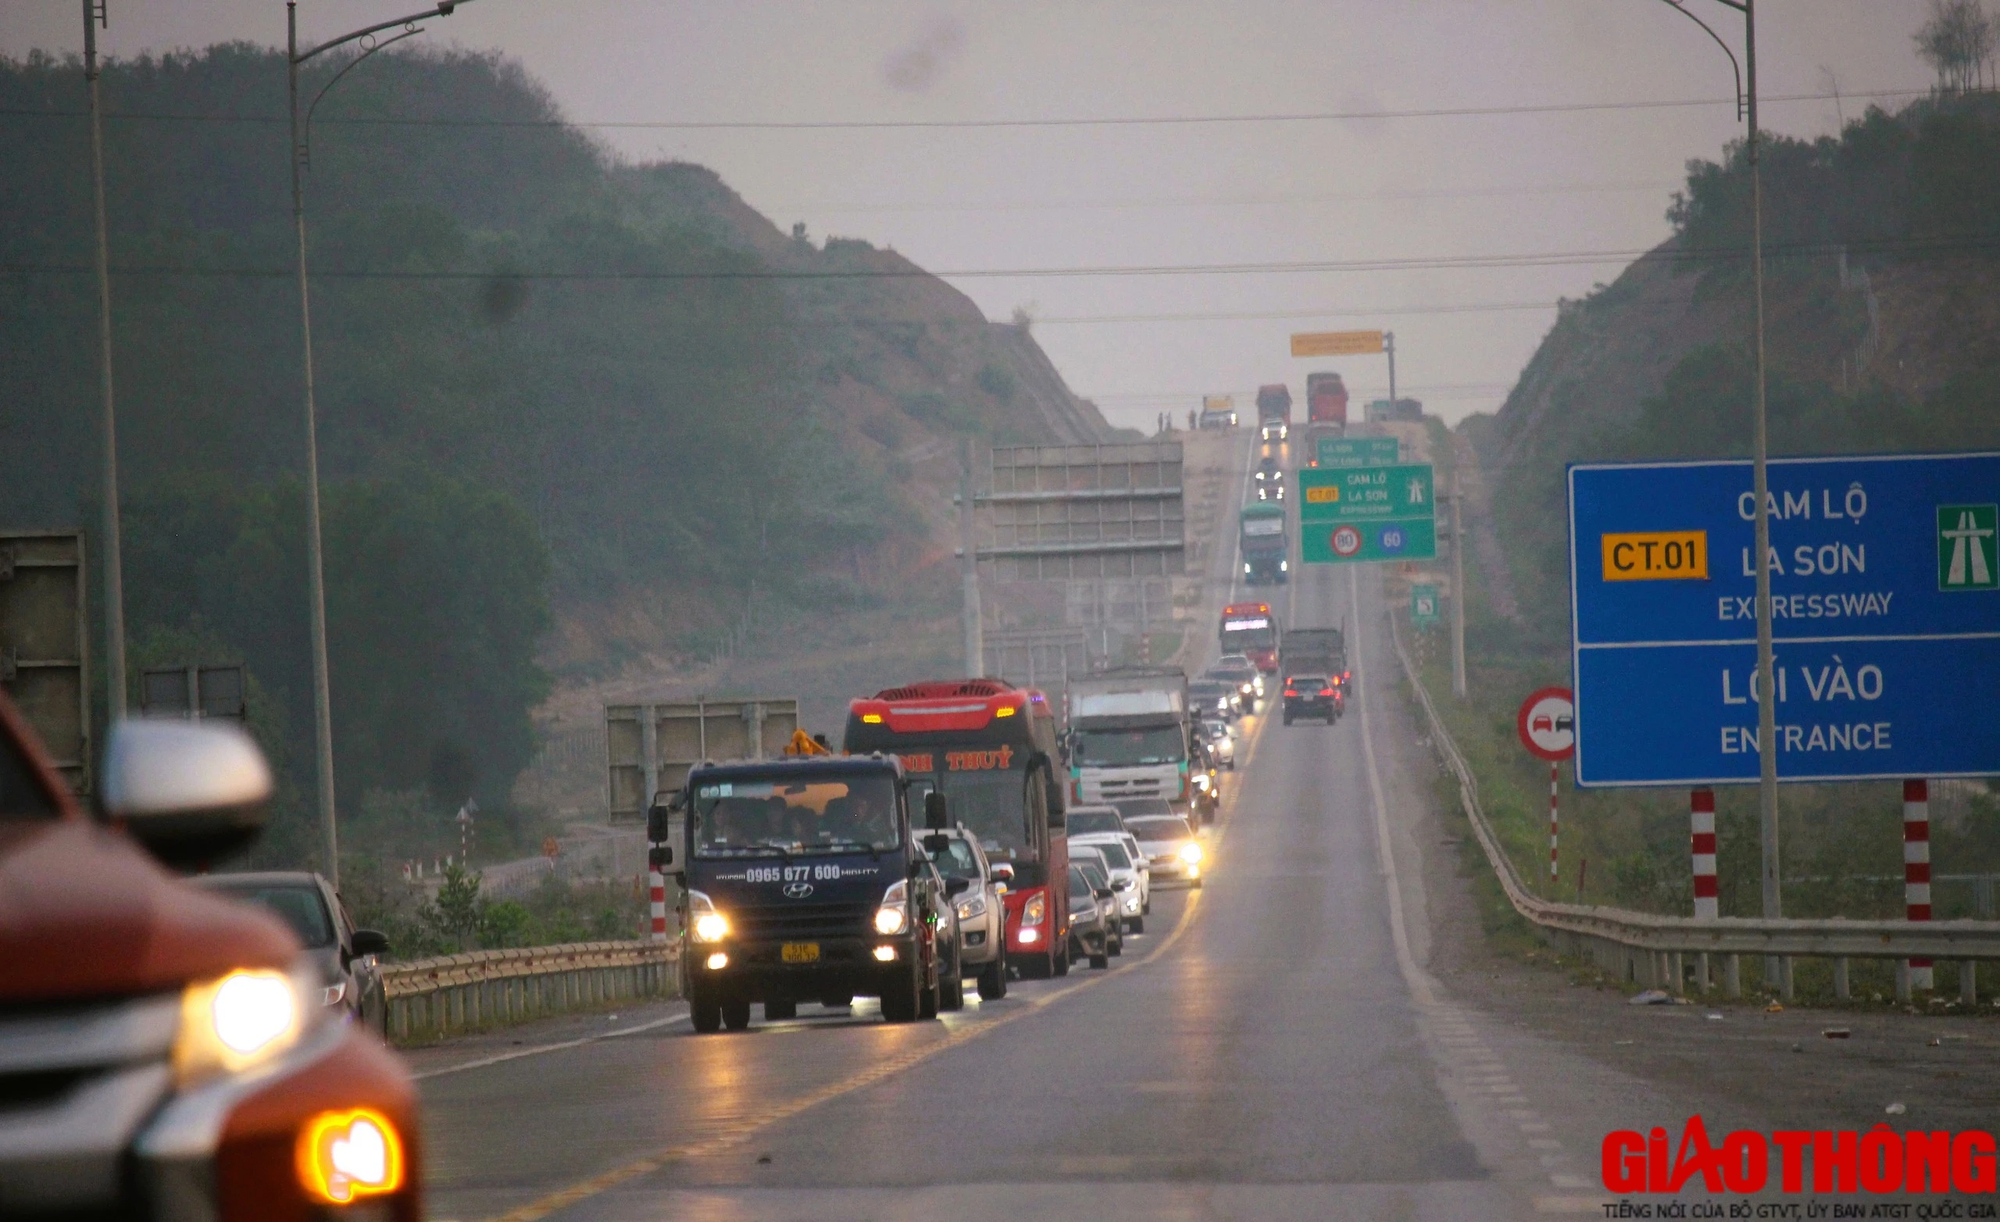 Cao tốc Cam Lộ - La Sơn nườm nượp xe cộ nối đuôi di chuyển về quê ăn Tết- Ảnh 2.